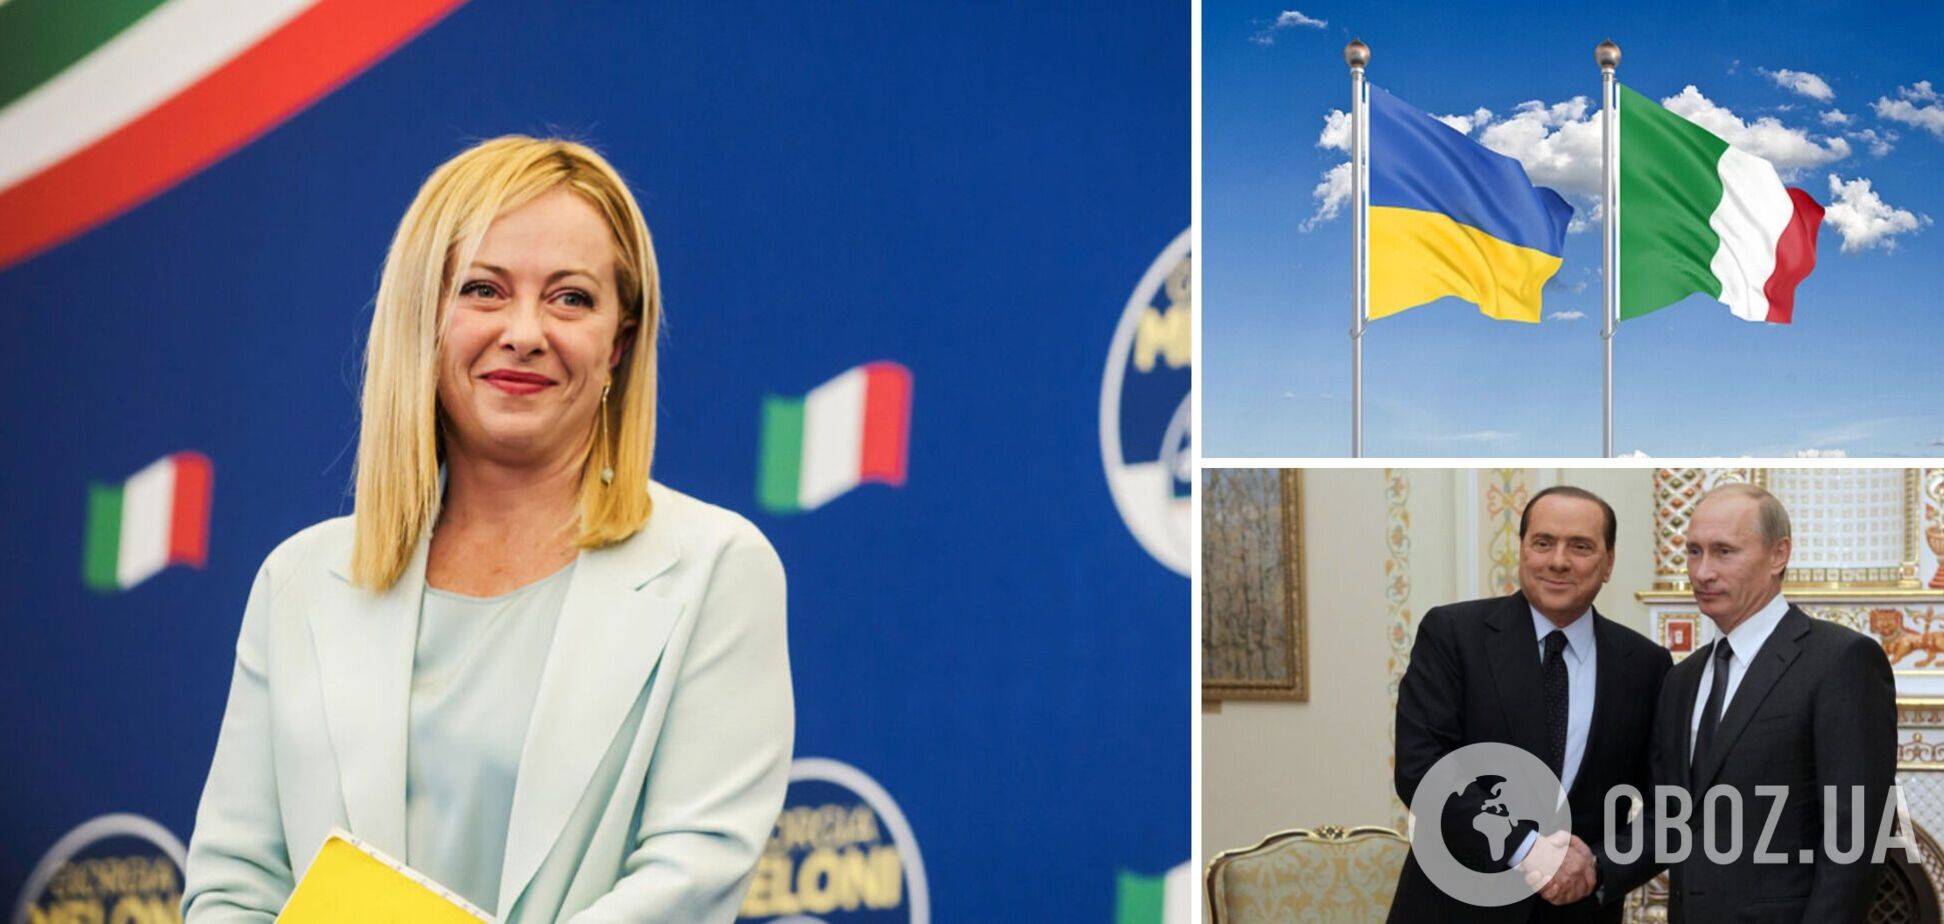 Прем'єр-міністерка Італії запевнила в рішучій підтримці України після скандальної заяви одного з політиків 